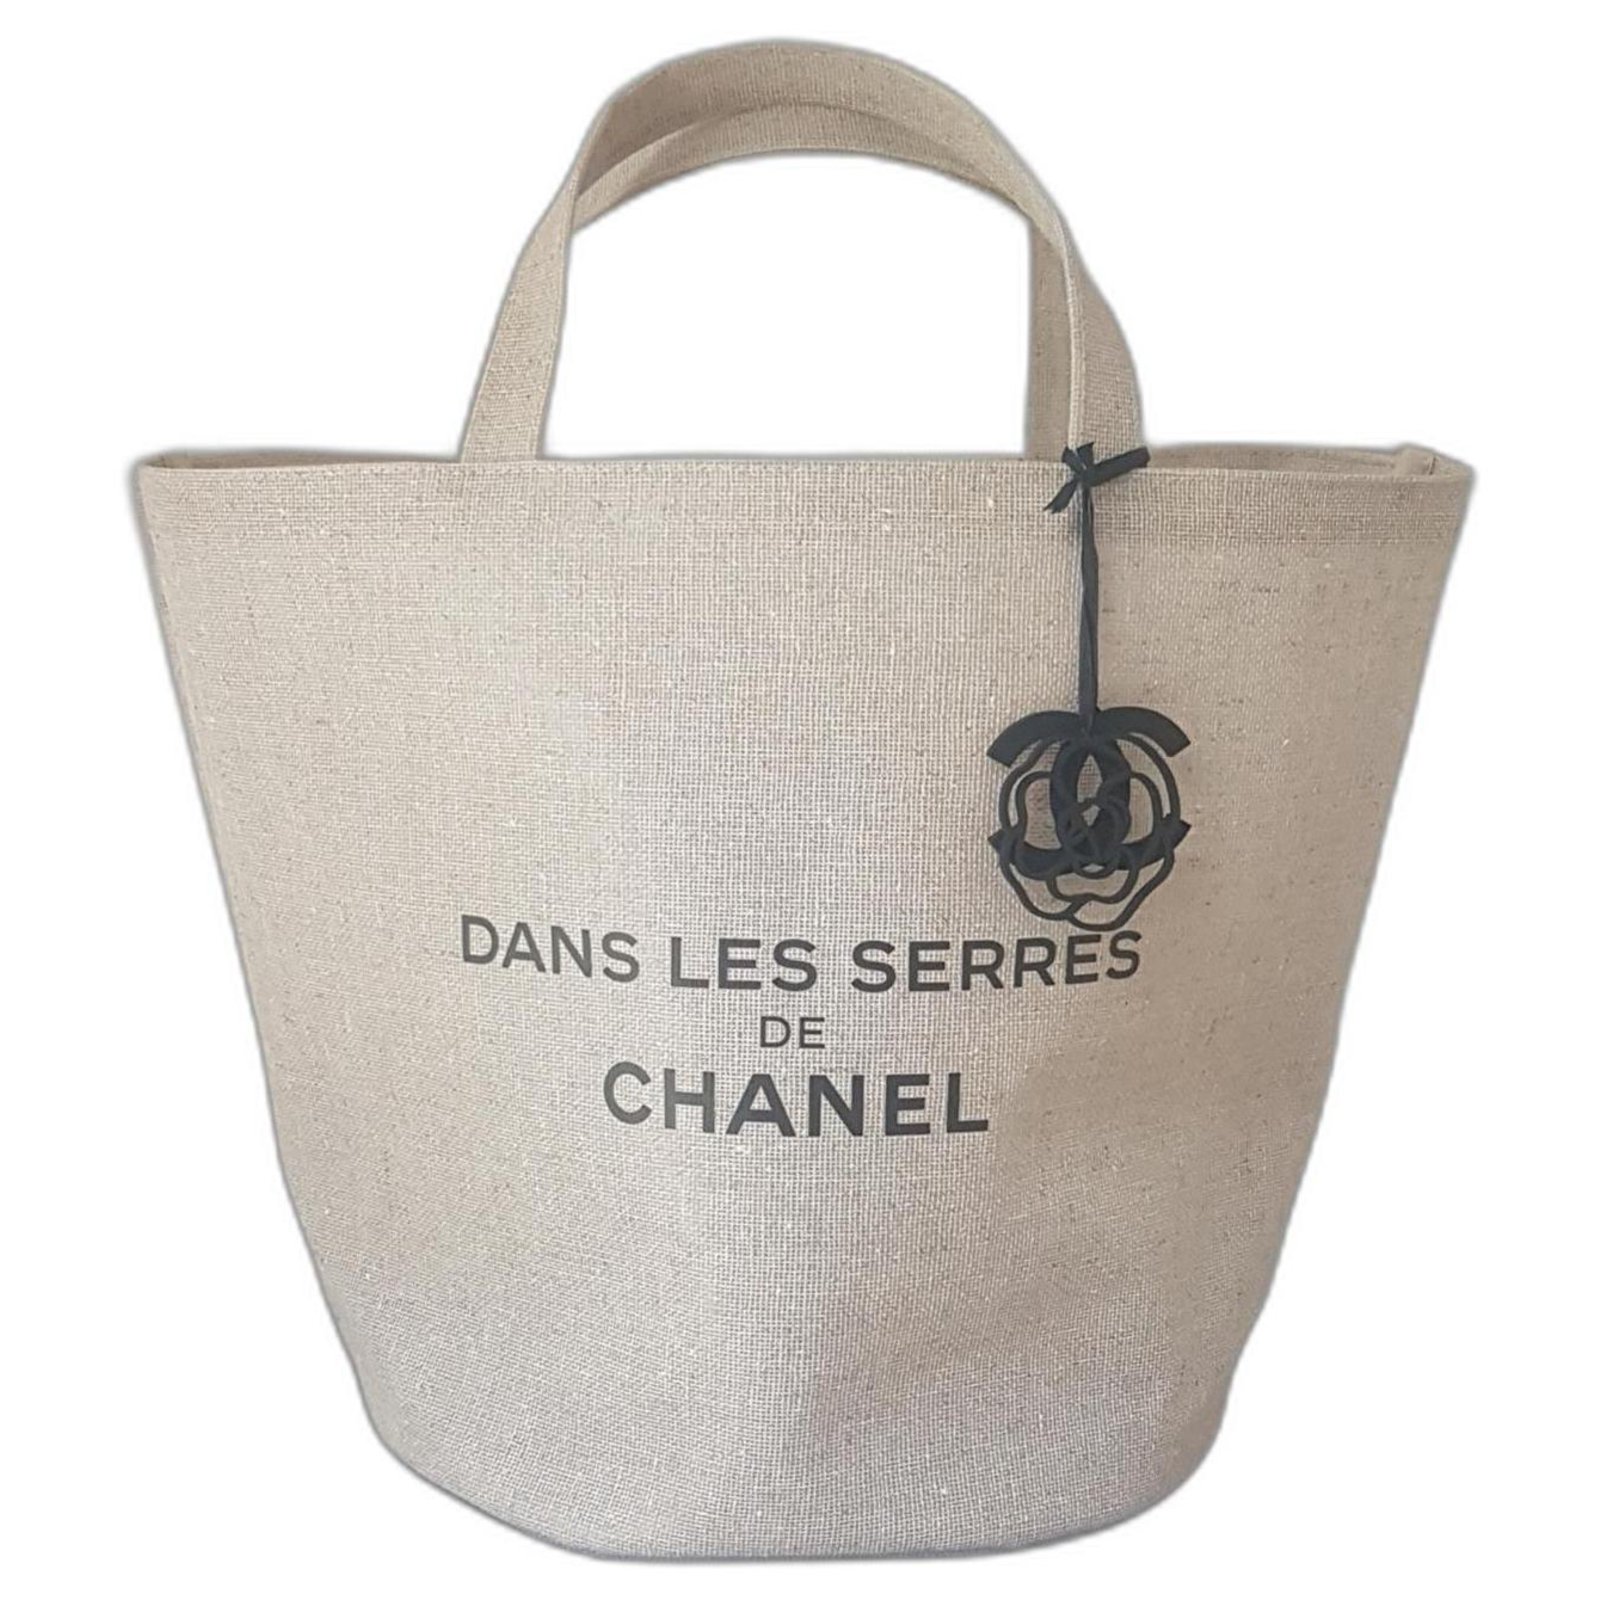 CHANEL Dans les serres de Chanel fashion show collector's bag